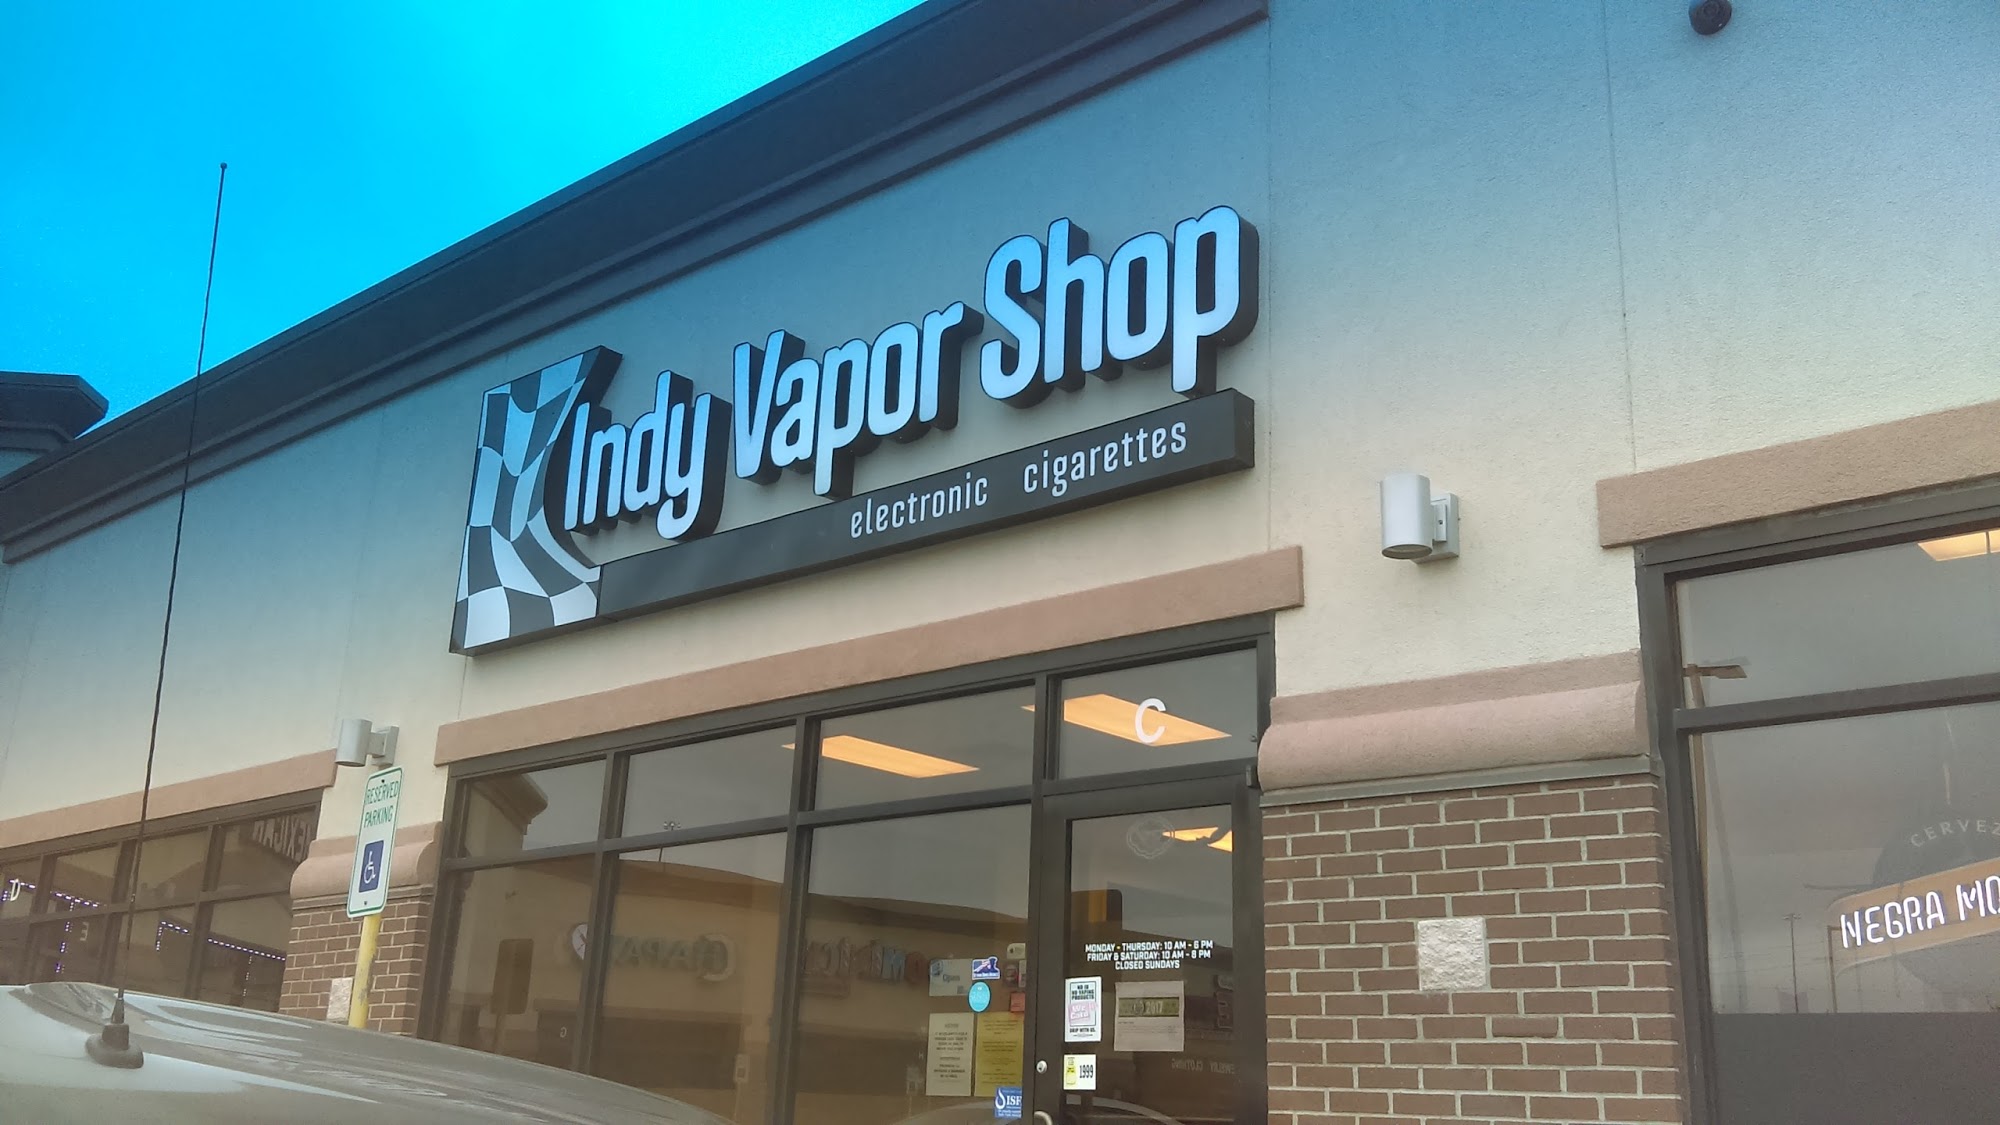 Indy Vapor Shop